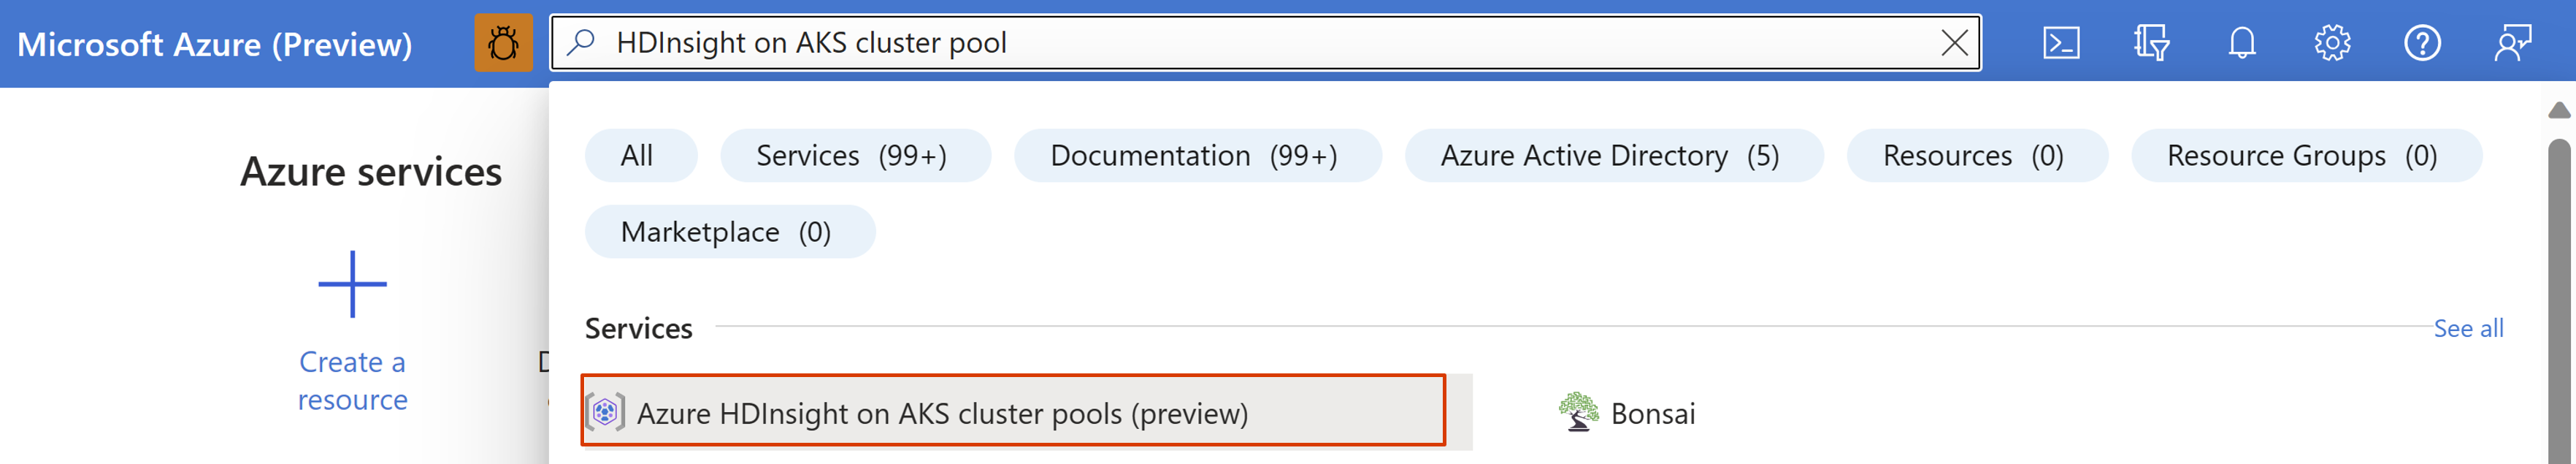 Captura de pantalla que muestra la barra de búsqueda en Azure Portal.